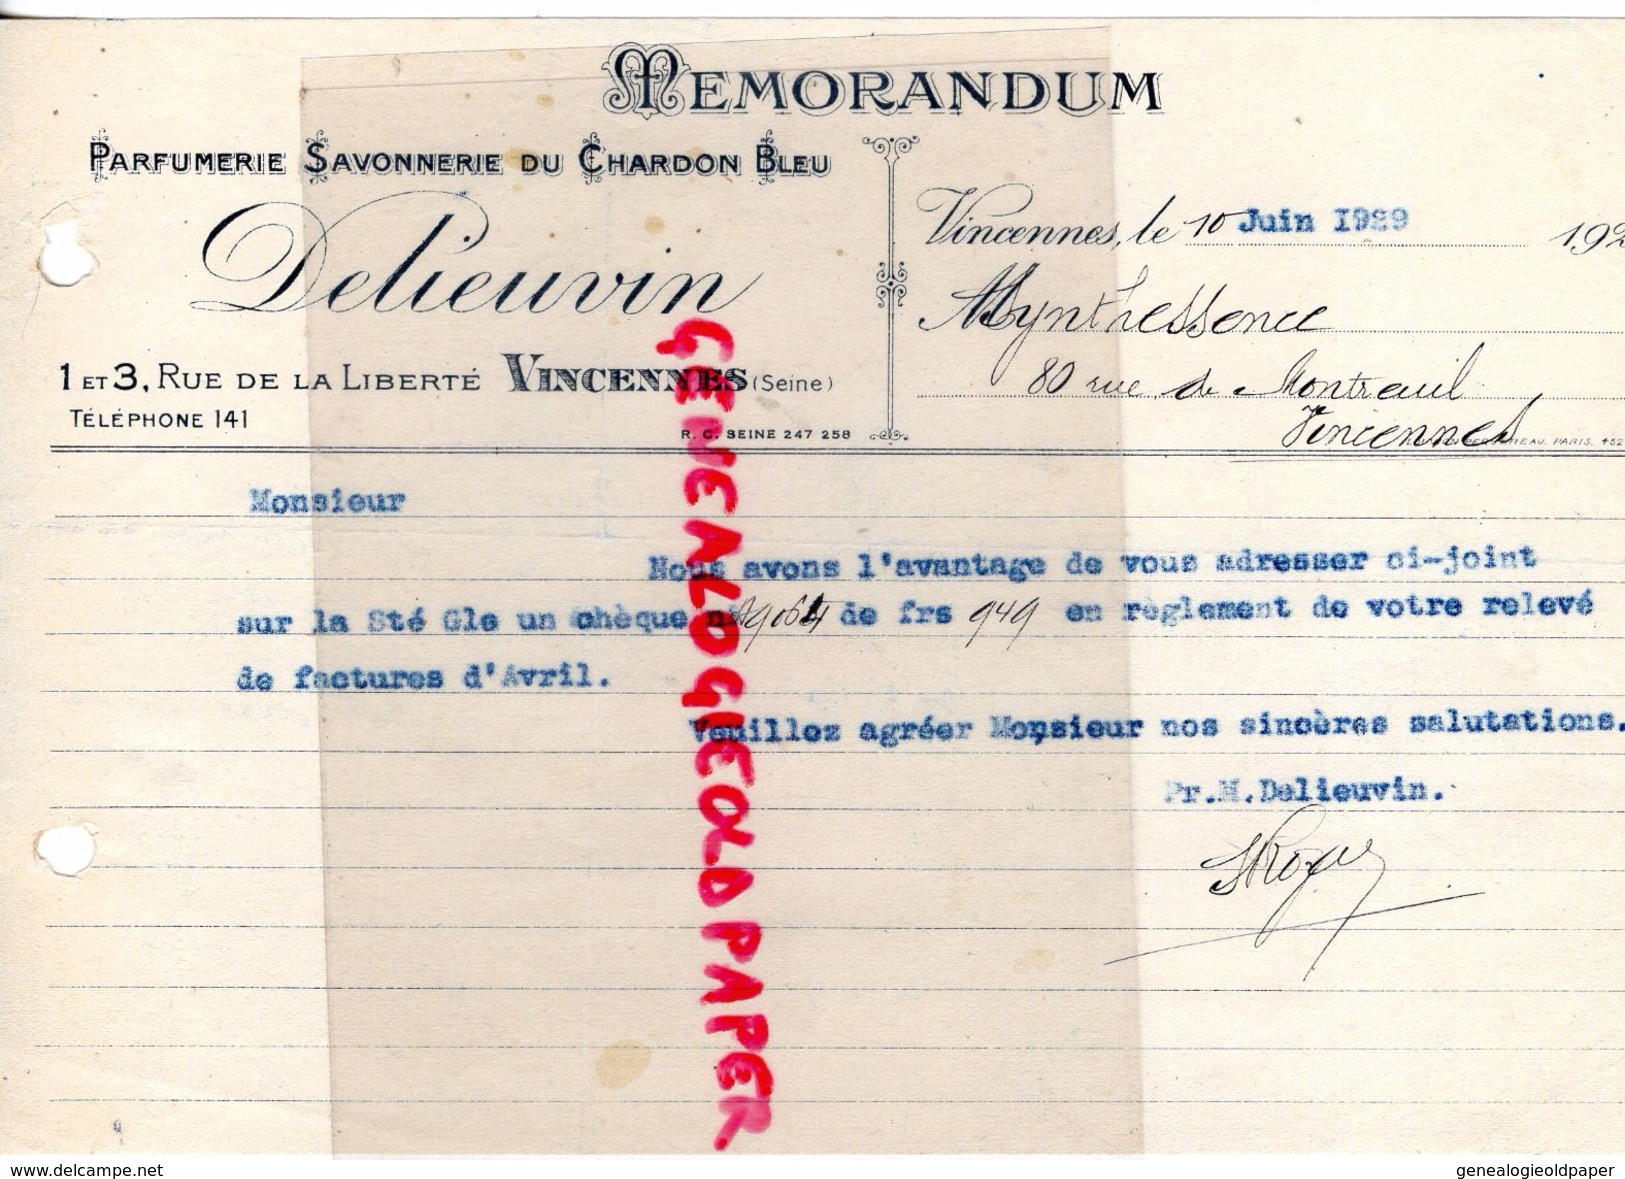 94- VINCENNES- MEMORANDUM DELIEUVI- PARFUMERIE SAVONNERIE DU CHARDON BLEU- 1-3 RUE LIBERTE- PARFUM- 1920 - Drogerie & Parfümerie